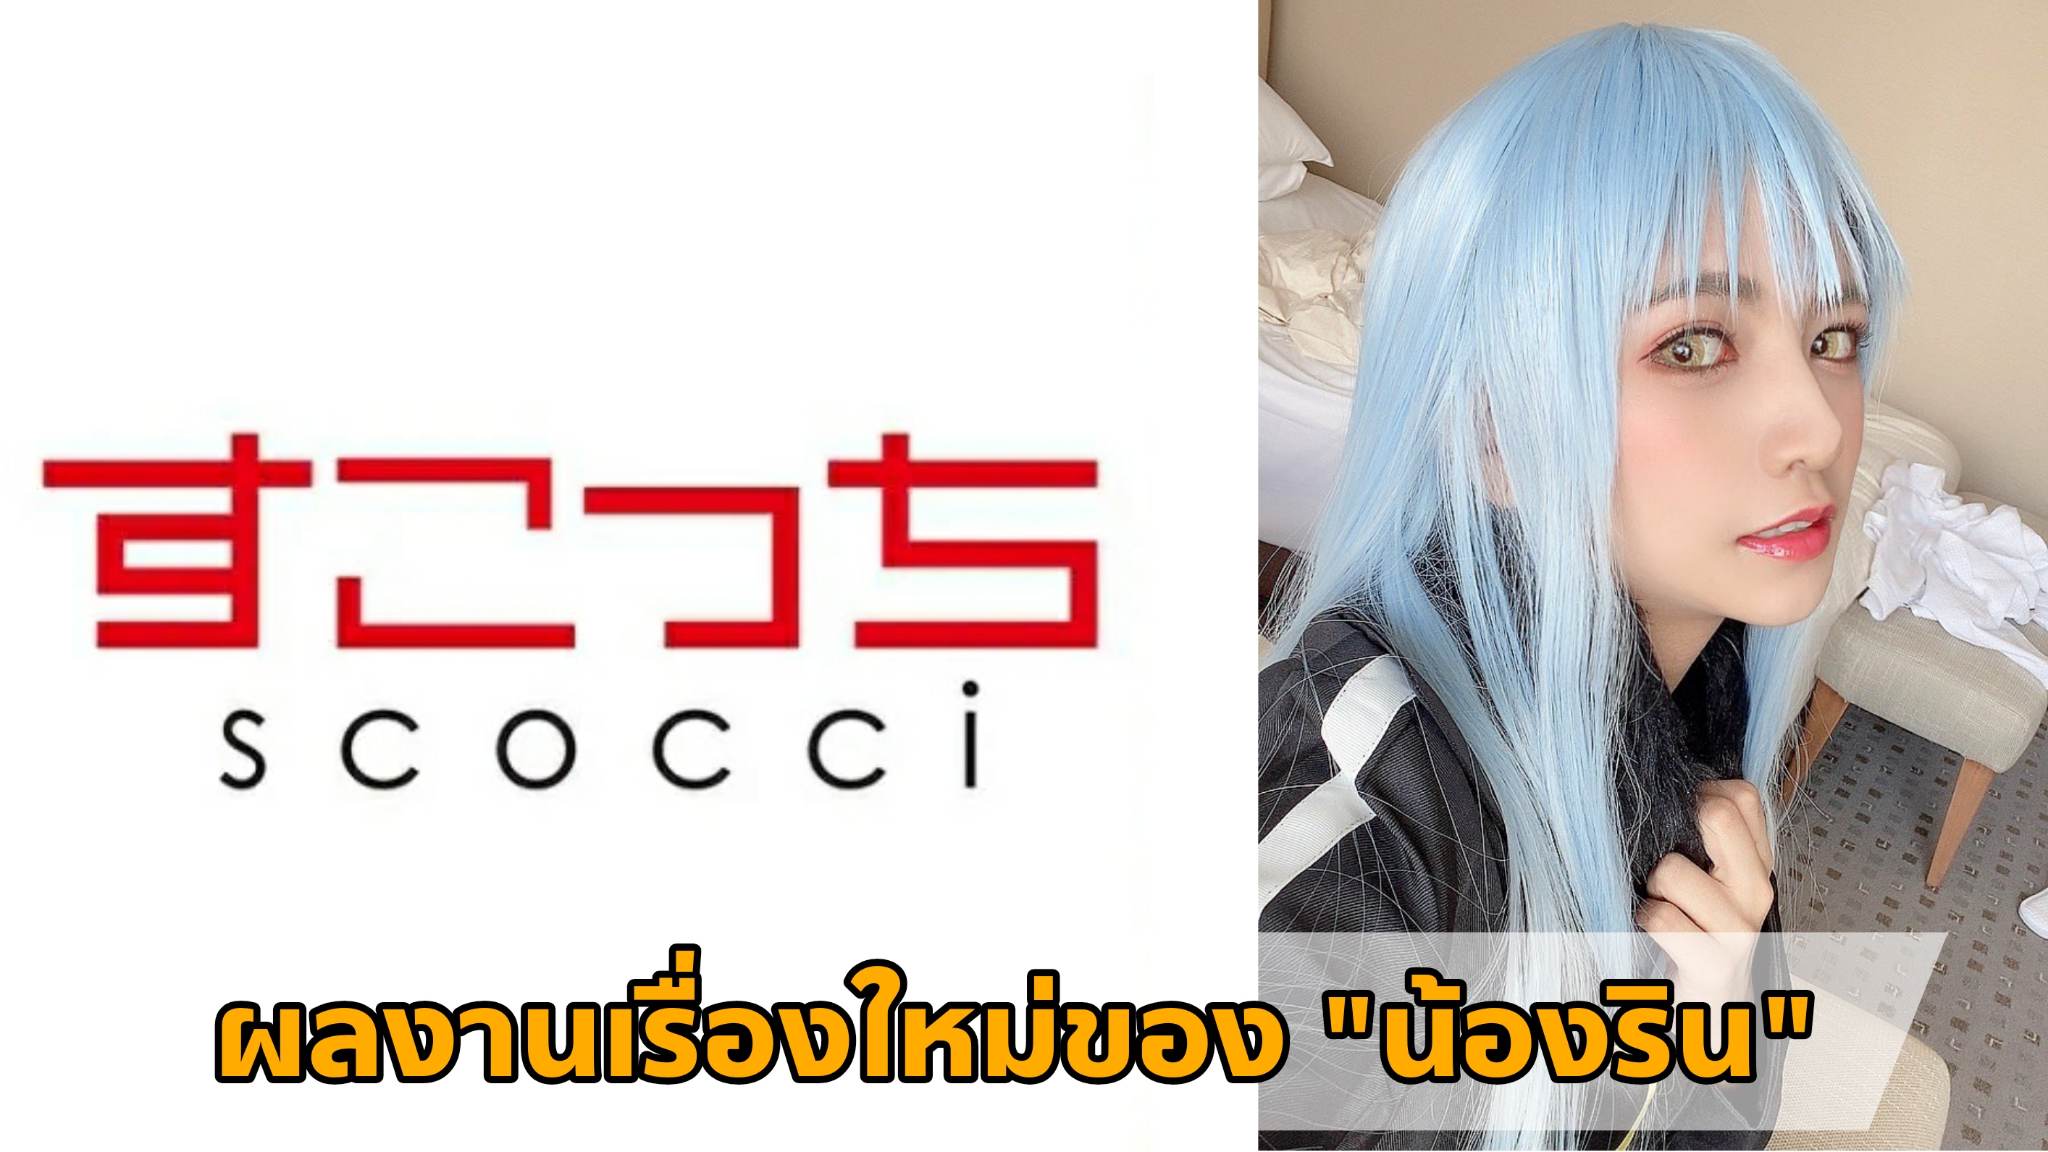 [SCOH-105] ผลงานเรื่องใหม่ของ "น้องริน" (Rin Miyazaki) Cosplay เป็น "ท่านริมุรุ" 3